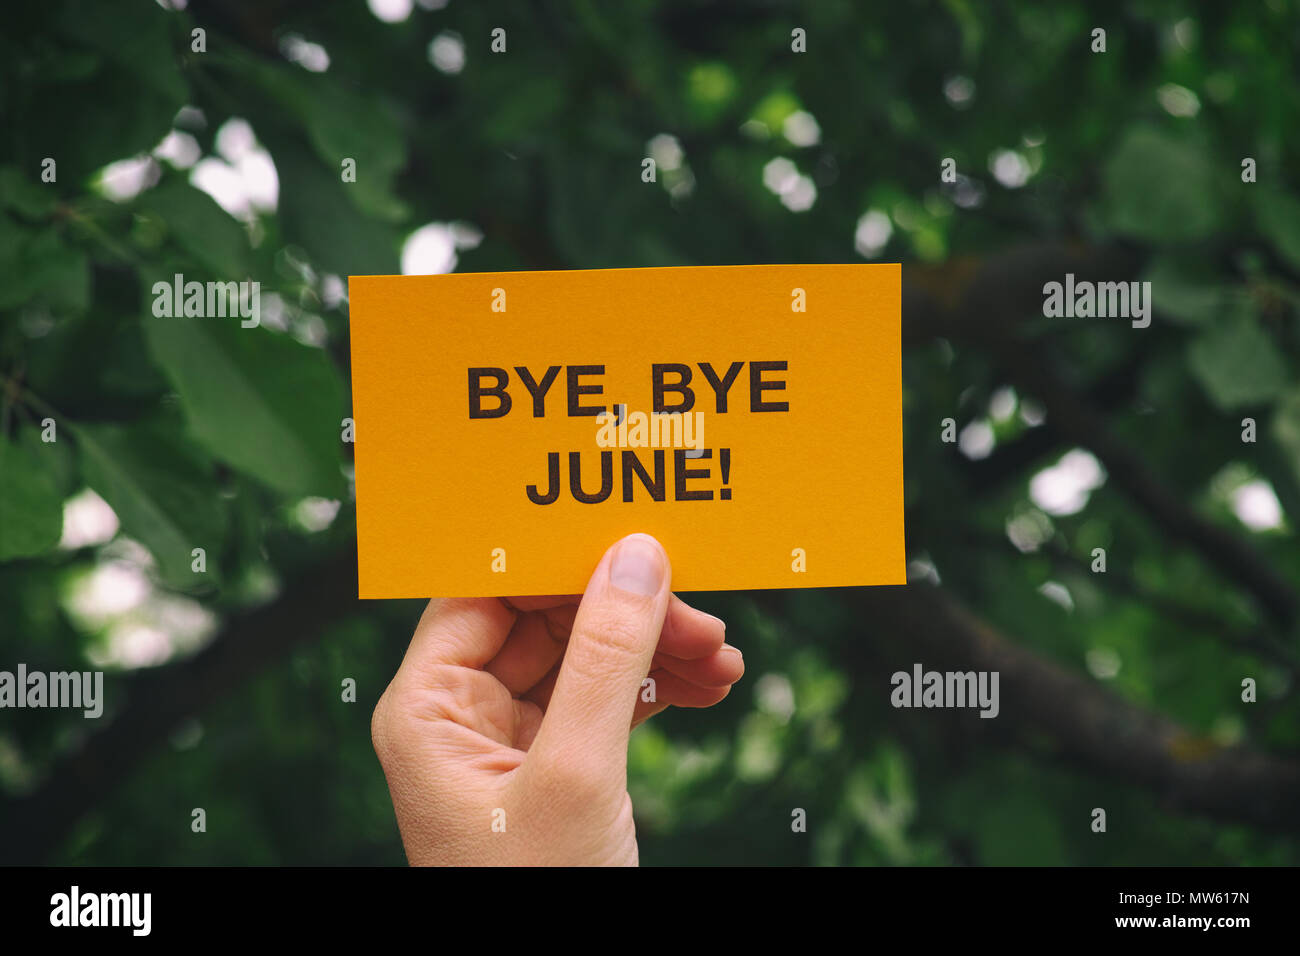 Bye, bye Juin ! Mains courantes feuille de papier jaune qui dit Bye, bye Juin !. Close up. Banque D'Images